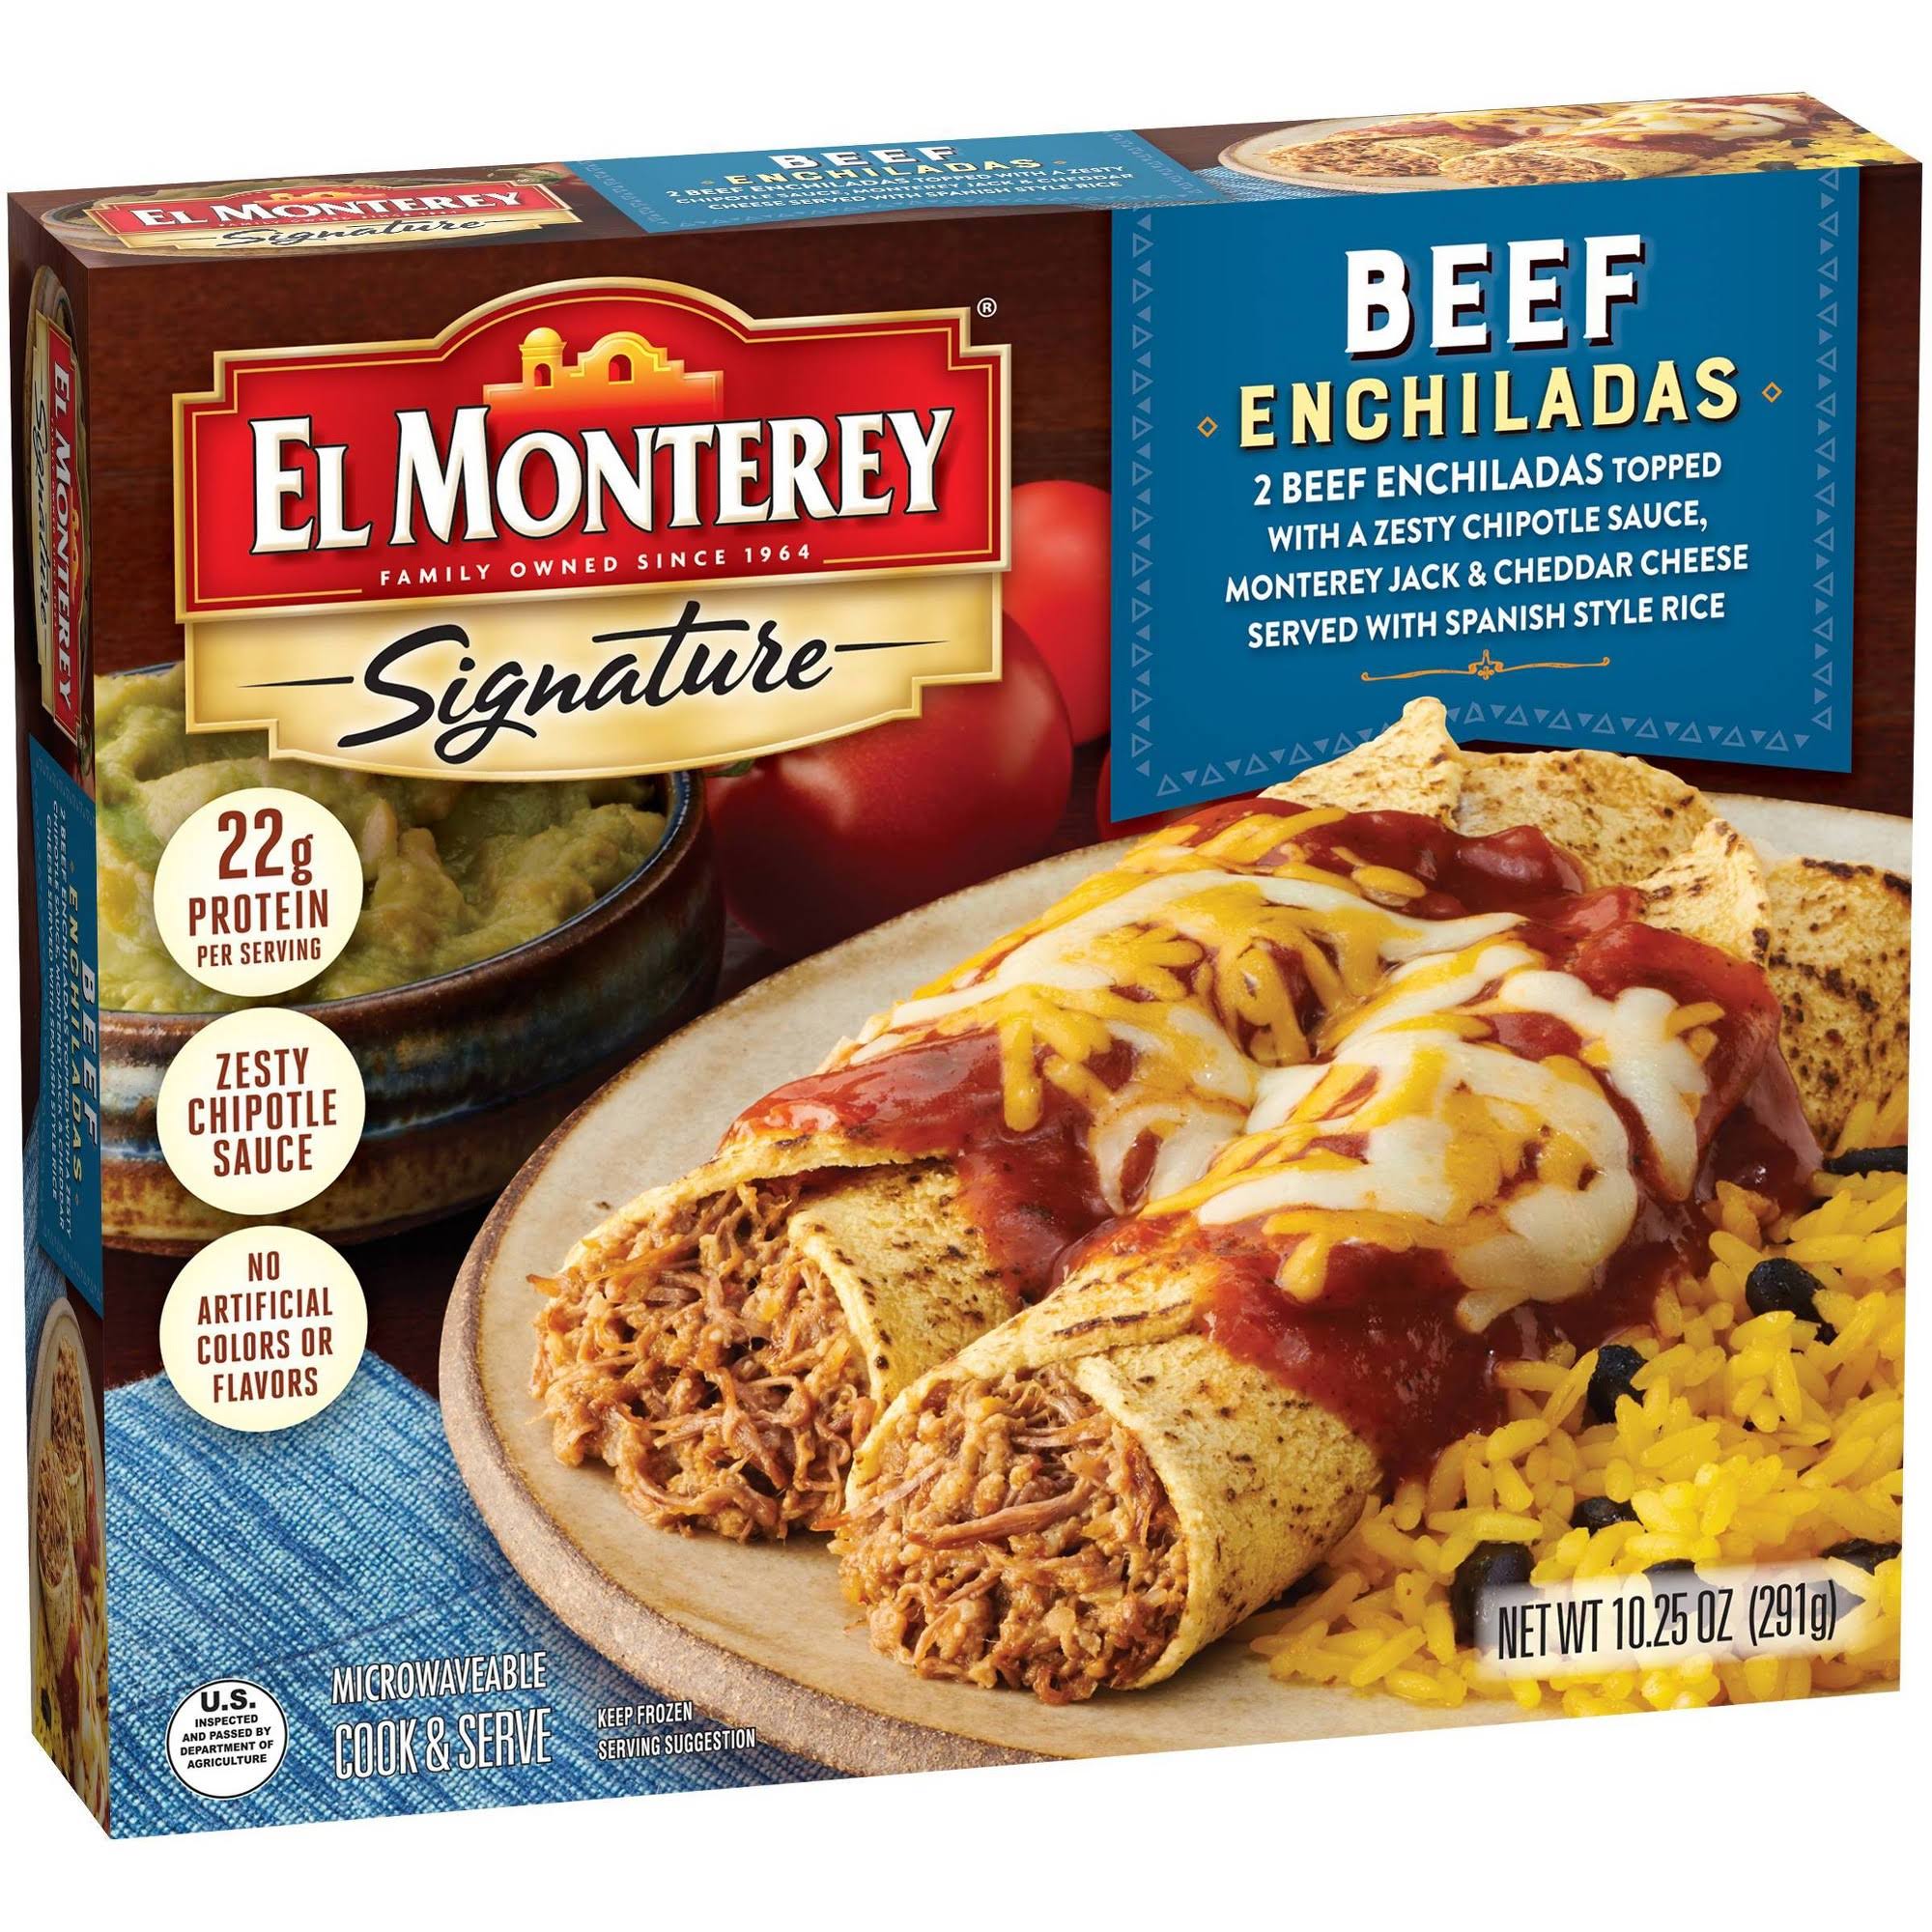 El Monterey Signature Enchiladas, Beef - 2 enchiladas, 10.25 oz